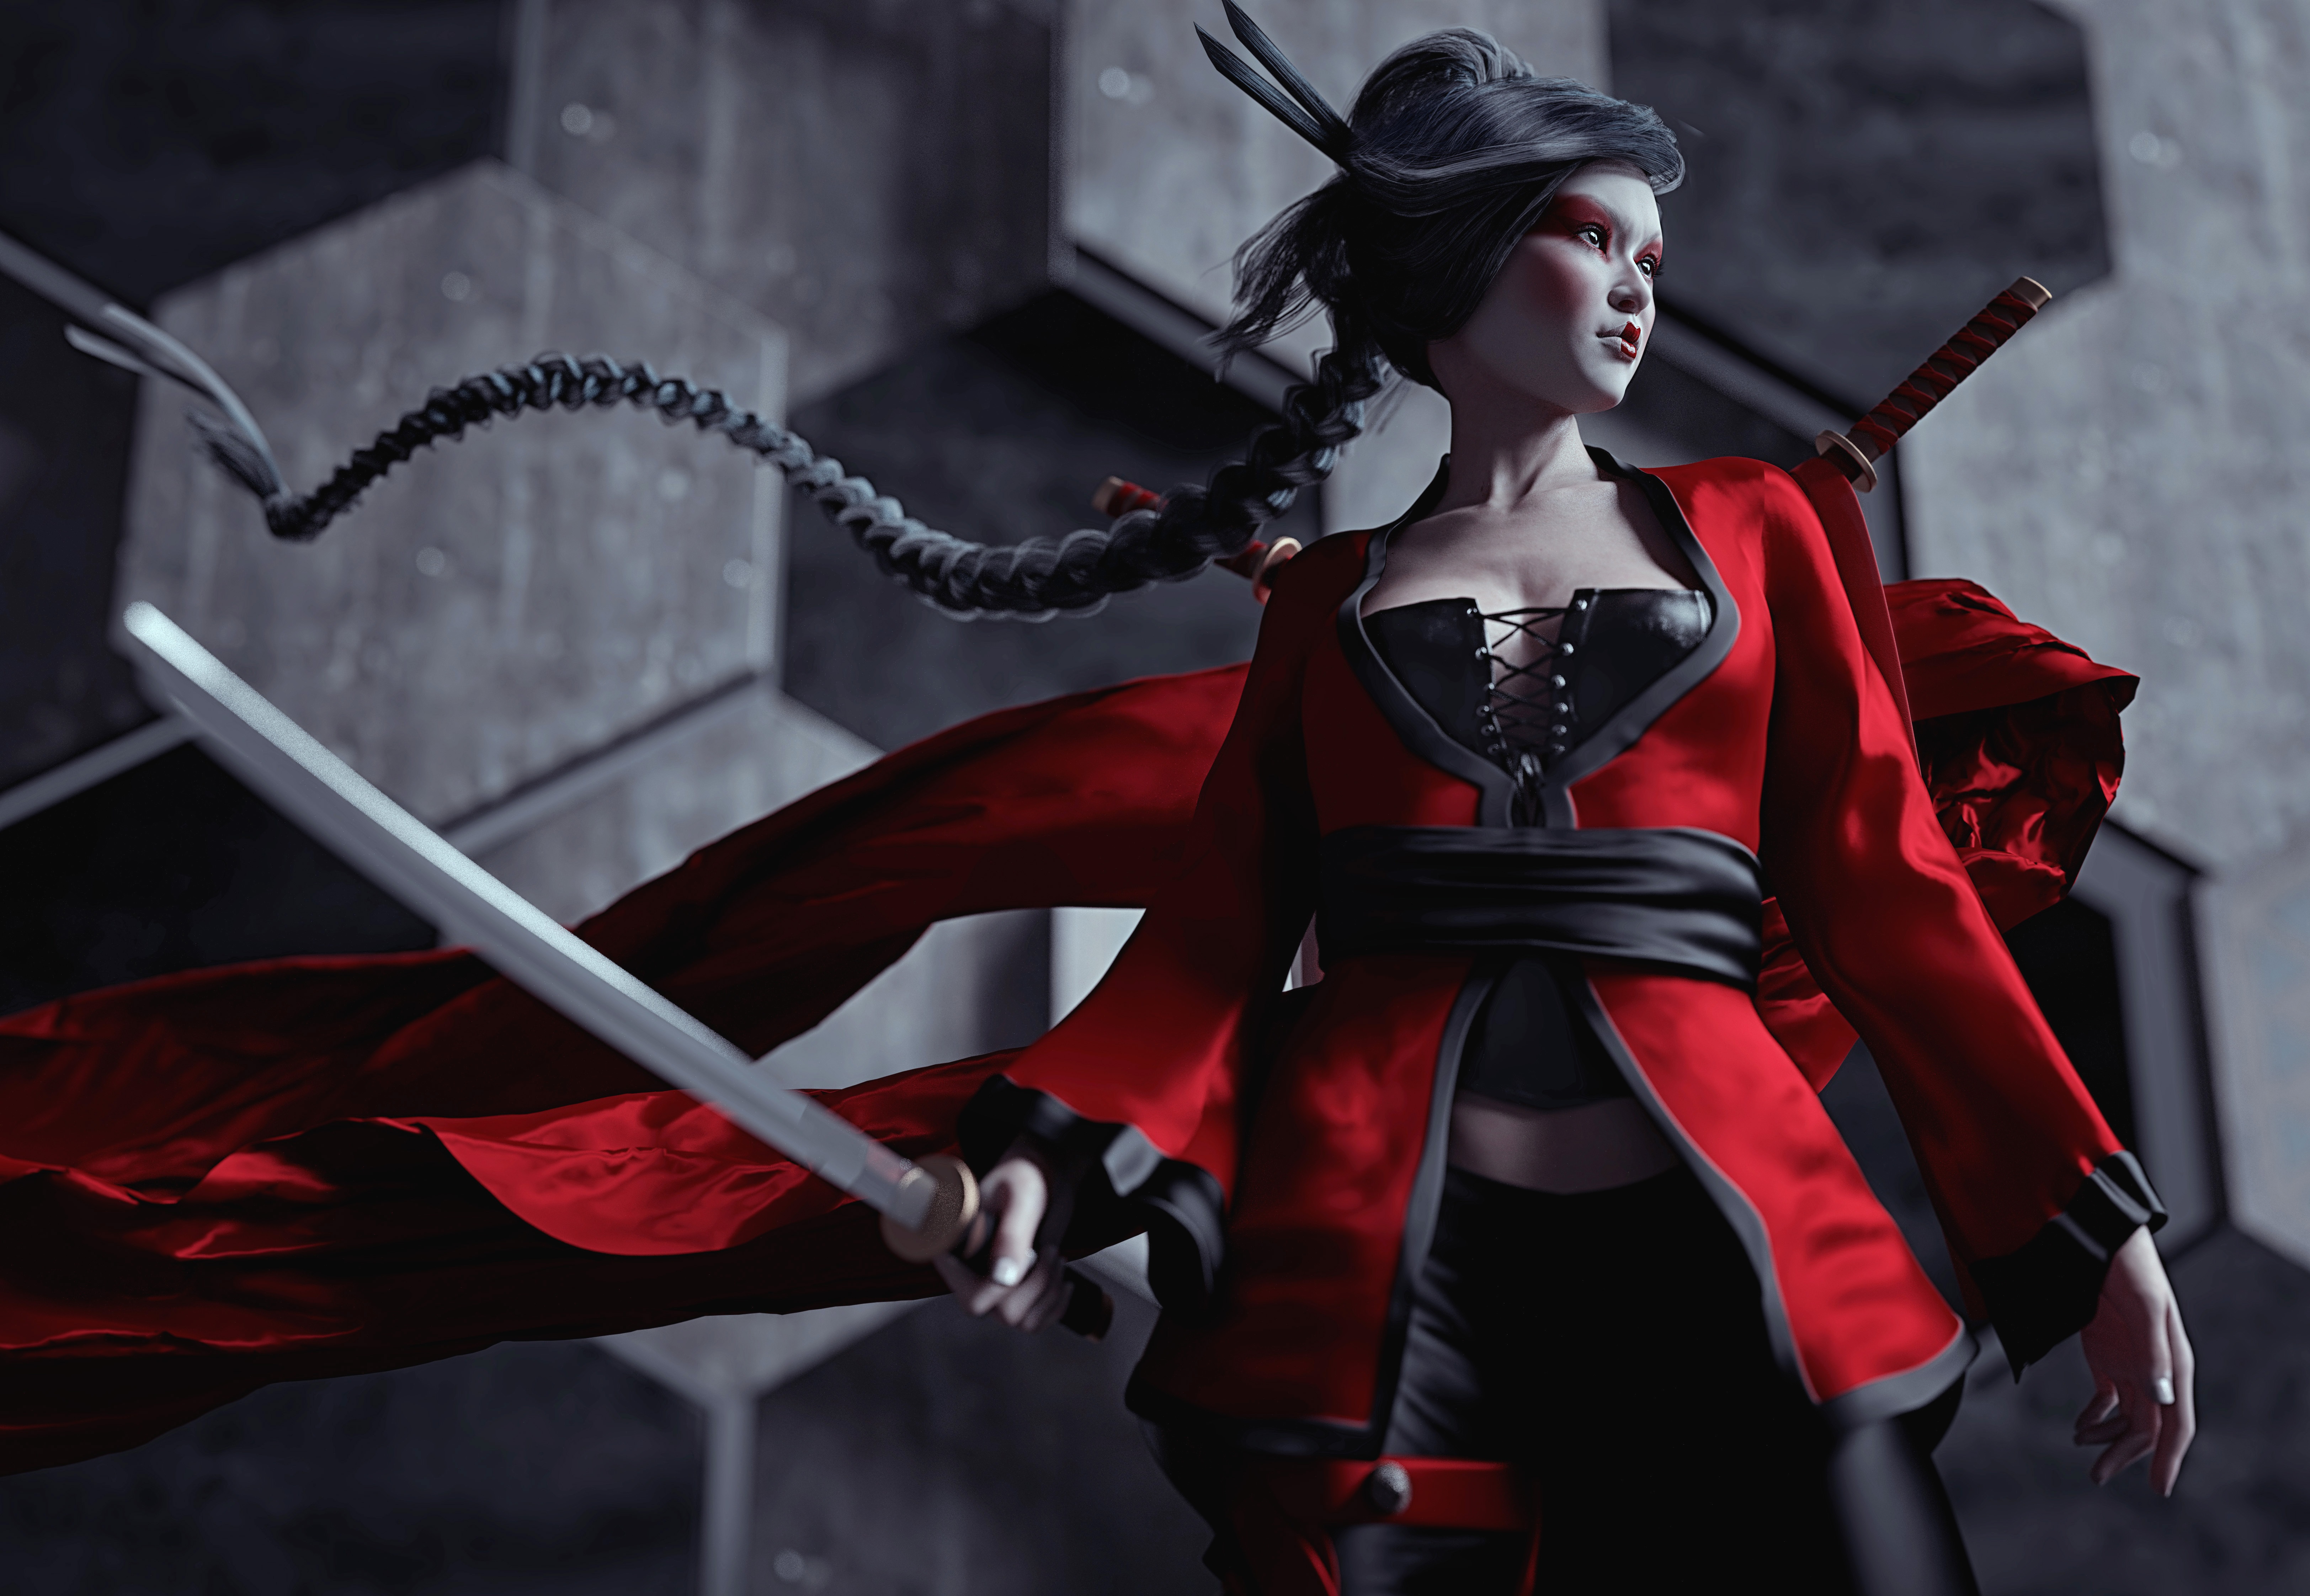 Artwork Women Render 3D Asian CGi Red Clothing Sword Ninja Portrait Japanese Wind Looking Away Braid 6496x4488